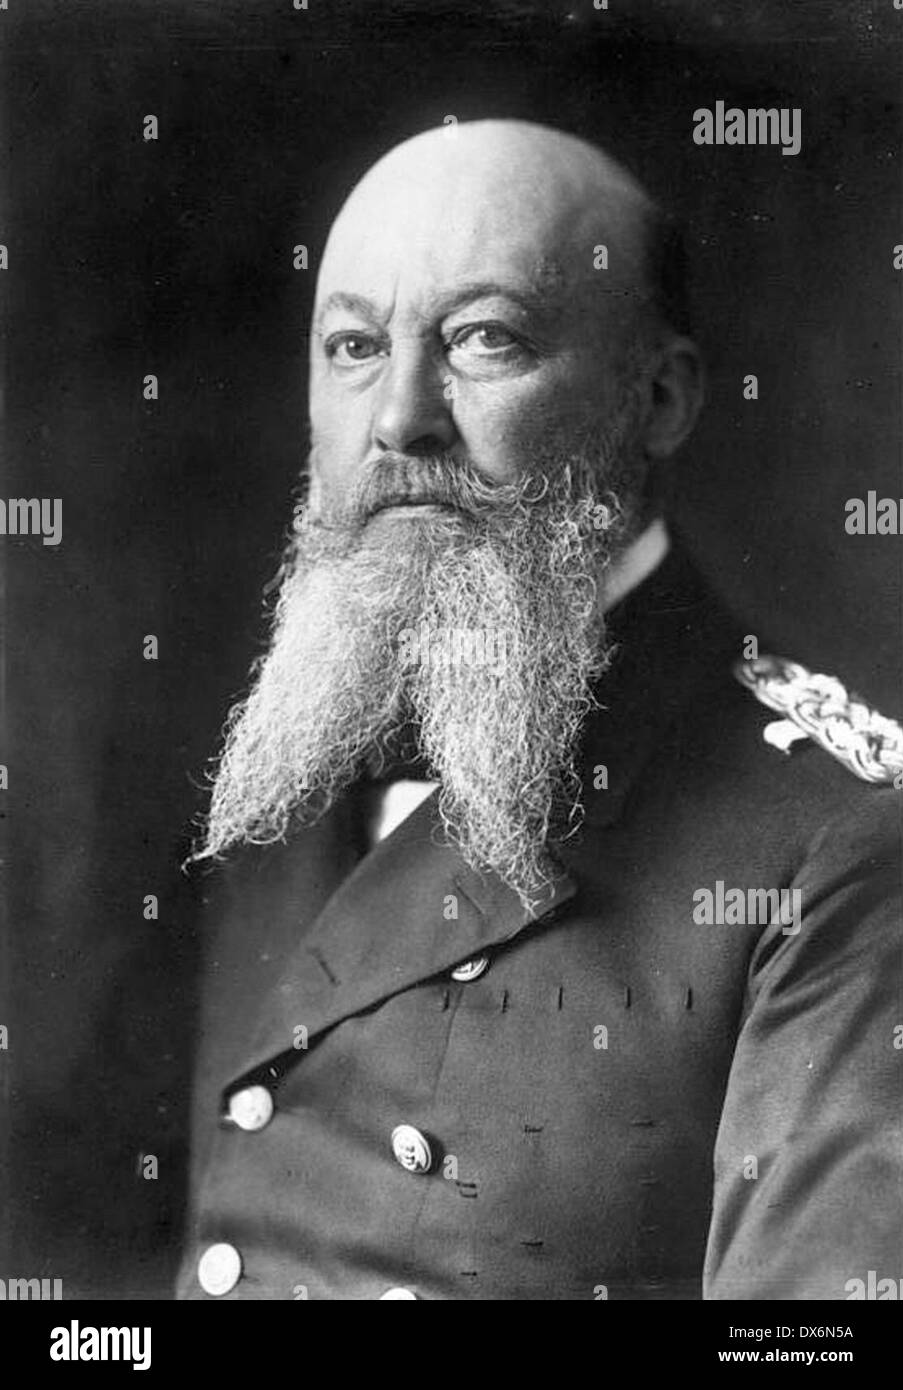 ALFRED von TIRPITZ (1849-1930) ammiraglio tedesco Foto Stock